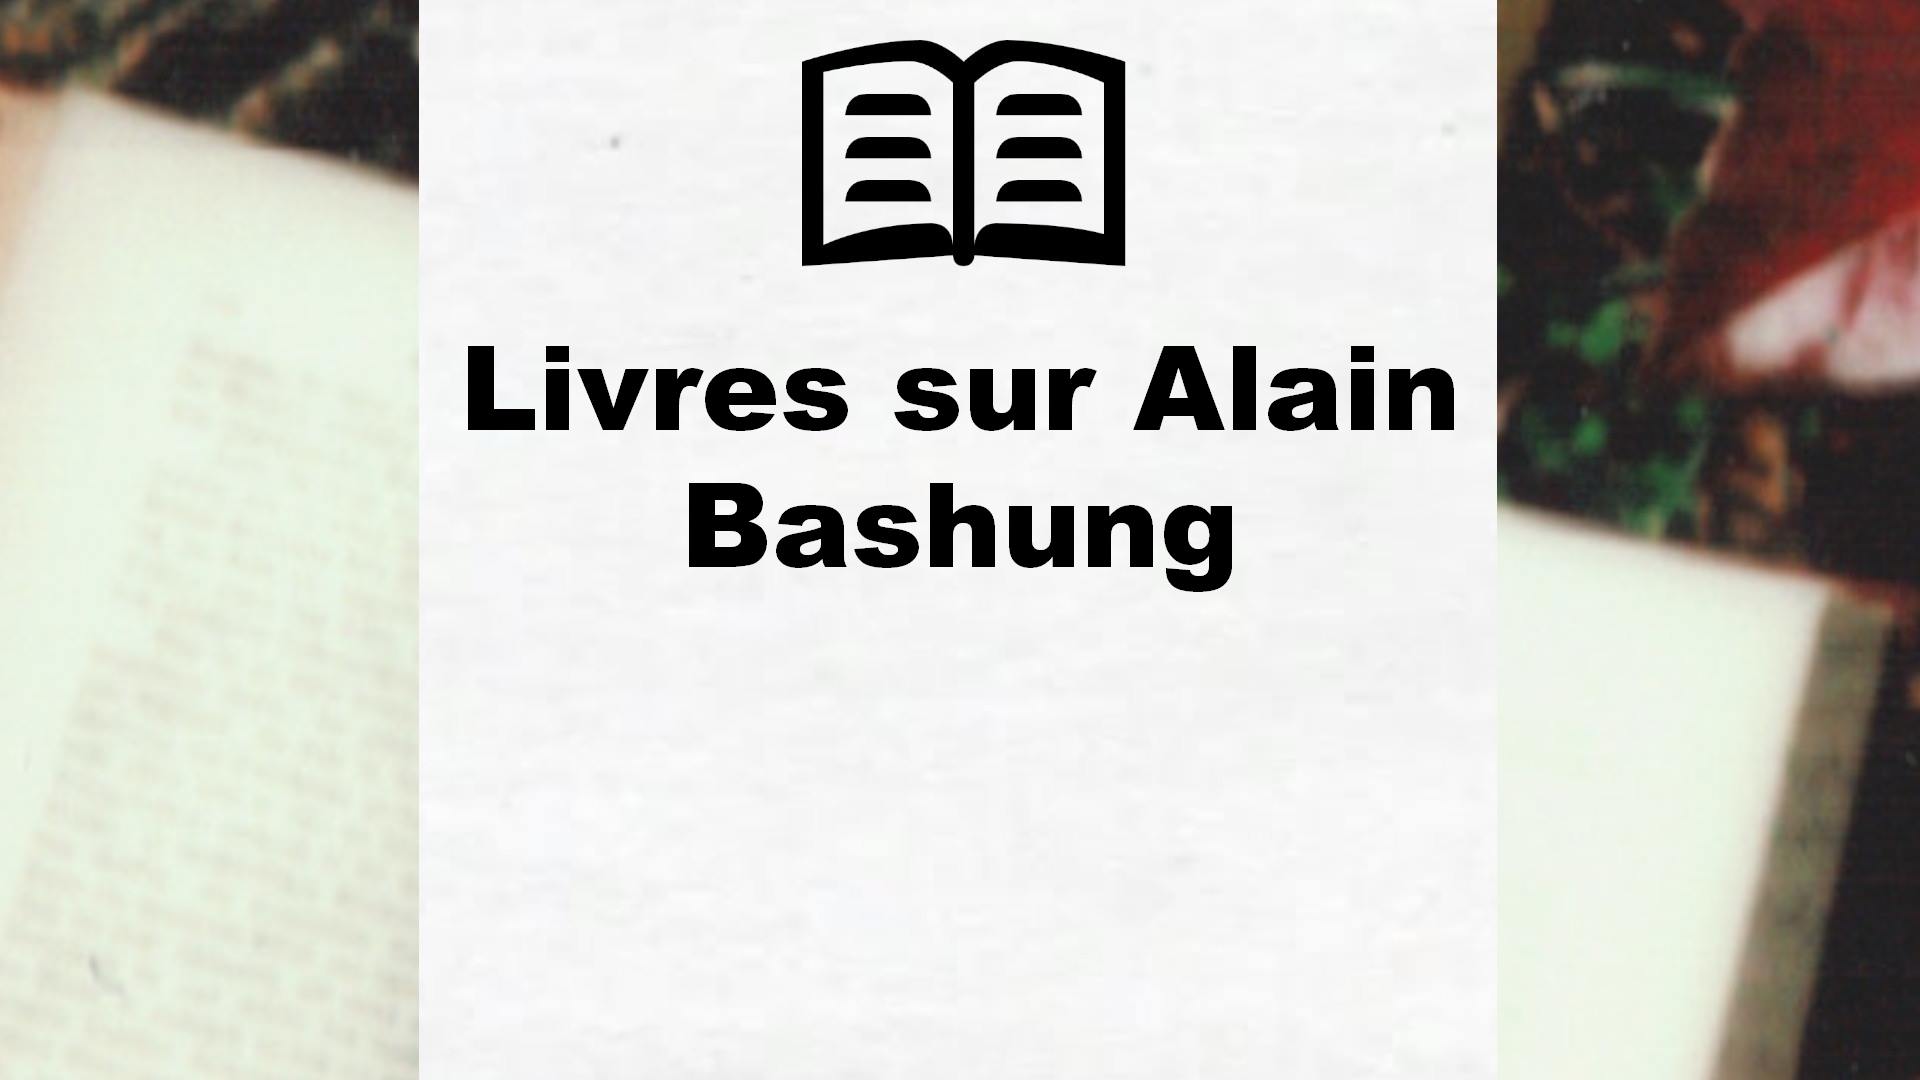 Livres sur Alain Bashung